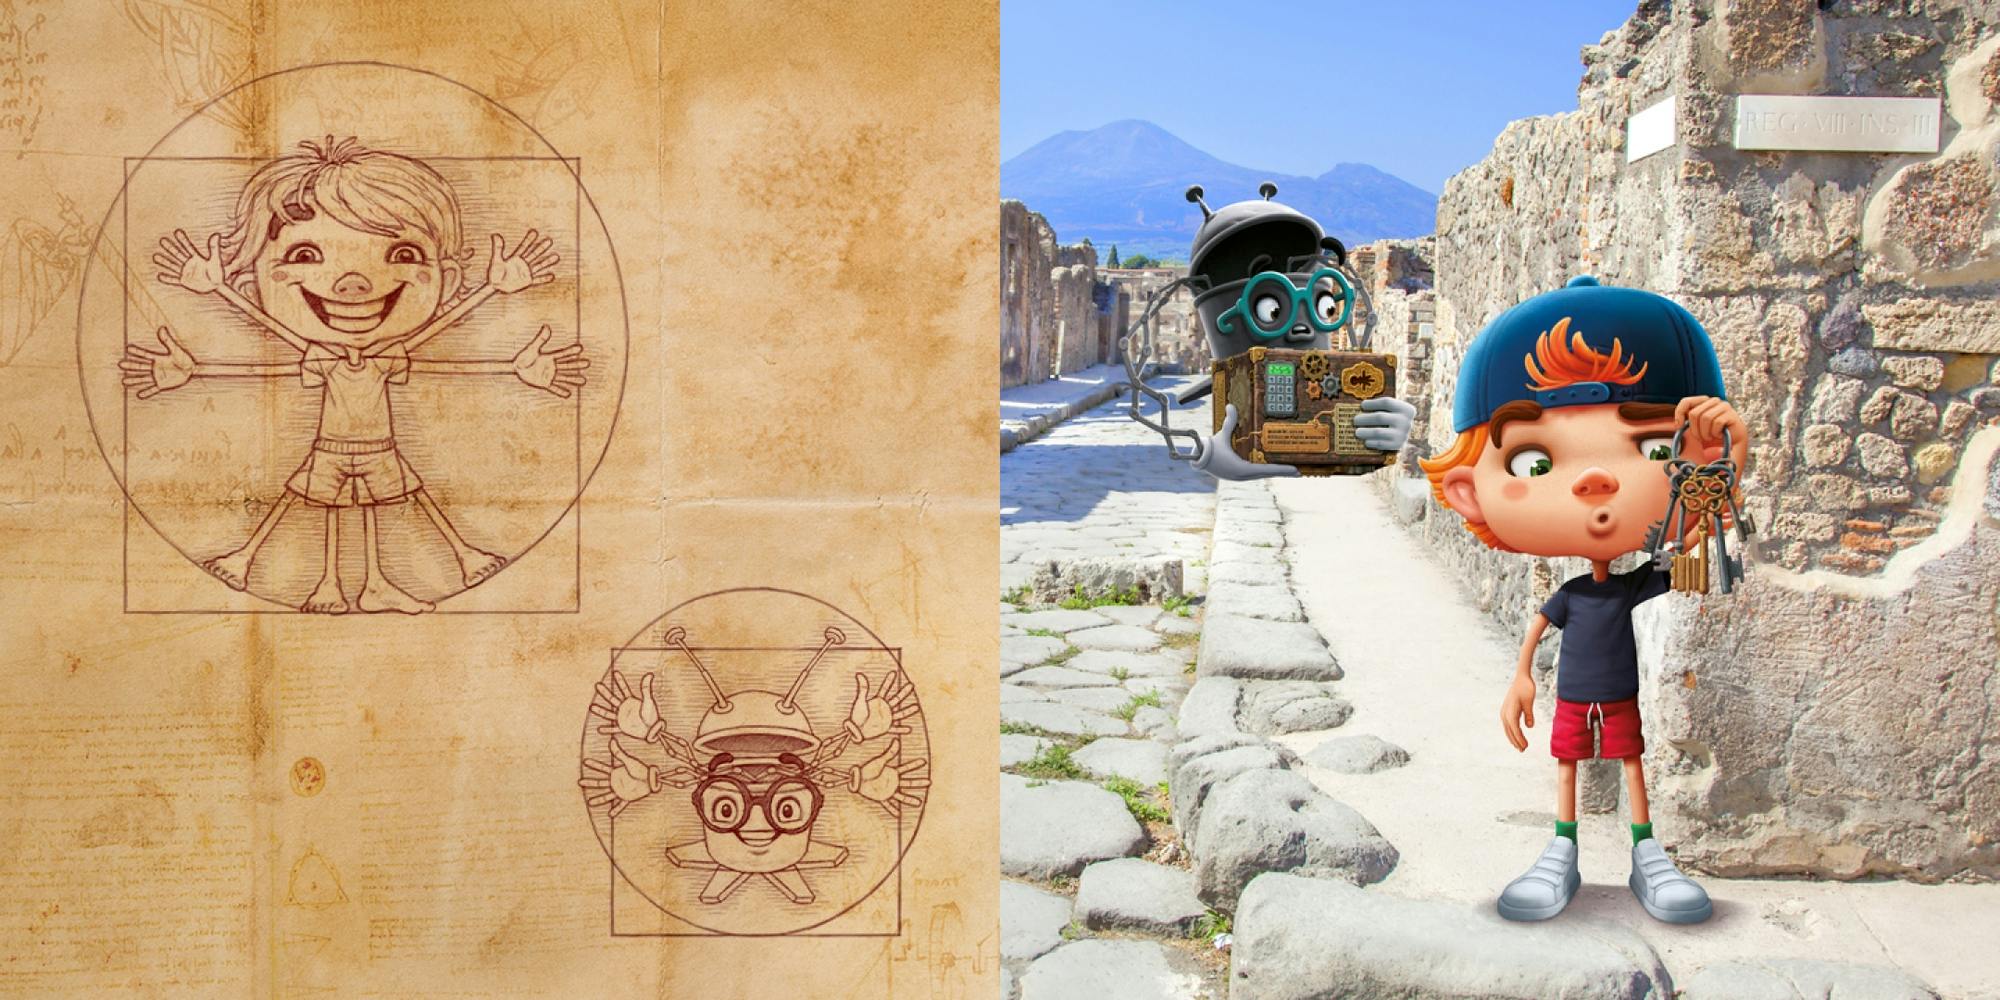 Bild Links: Oskar und Bo gezeichnet im Stil von Da Vinci's Vitruvianischer Mensch. Bild Rechts: Oskar und Bo stehen in den Ruinen von Pompei mit der Kiste und einem Schlüsselbund in der Hand. © goodmatters